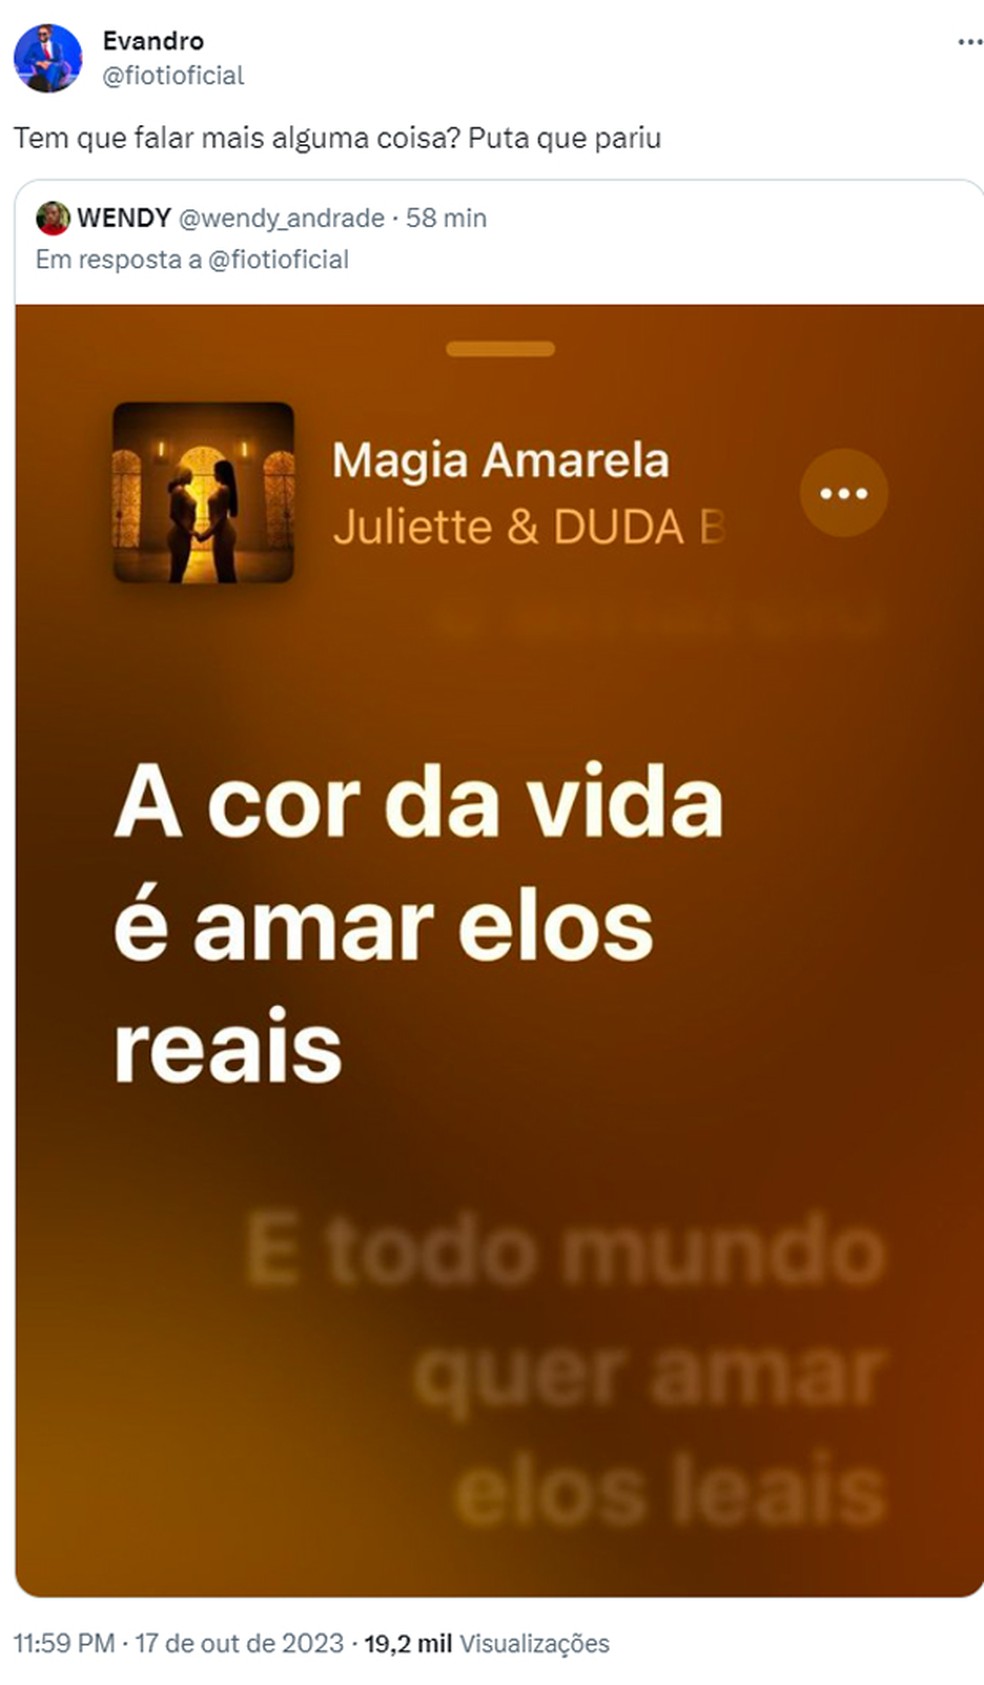 Juliette e Duda Beat são acusadas de plagiar 'AmarElo', de Emicida, em  feat.; entenda